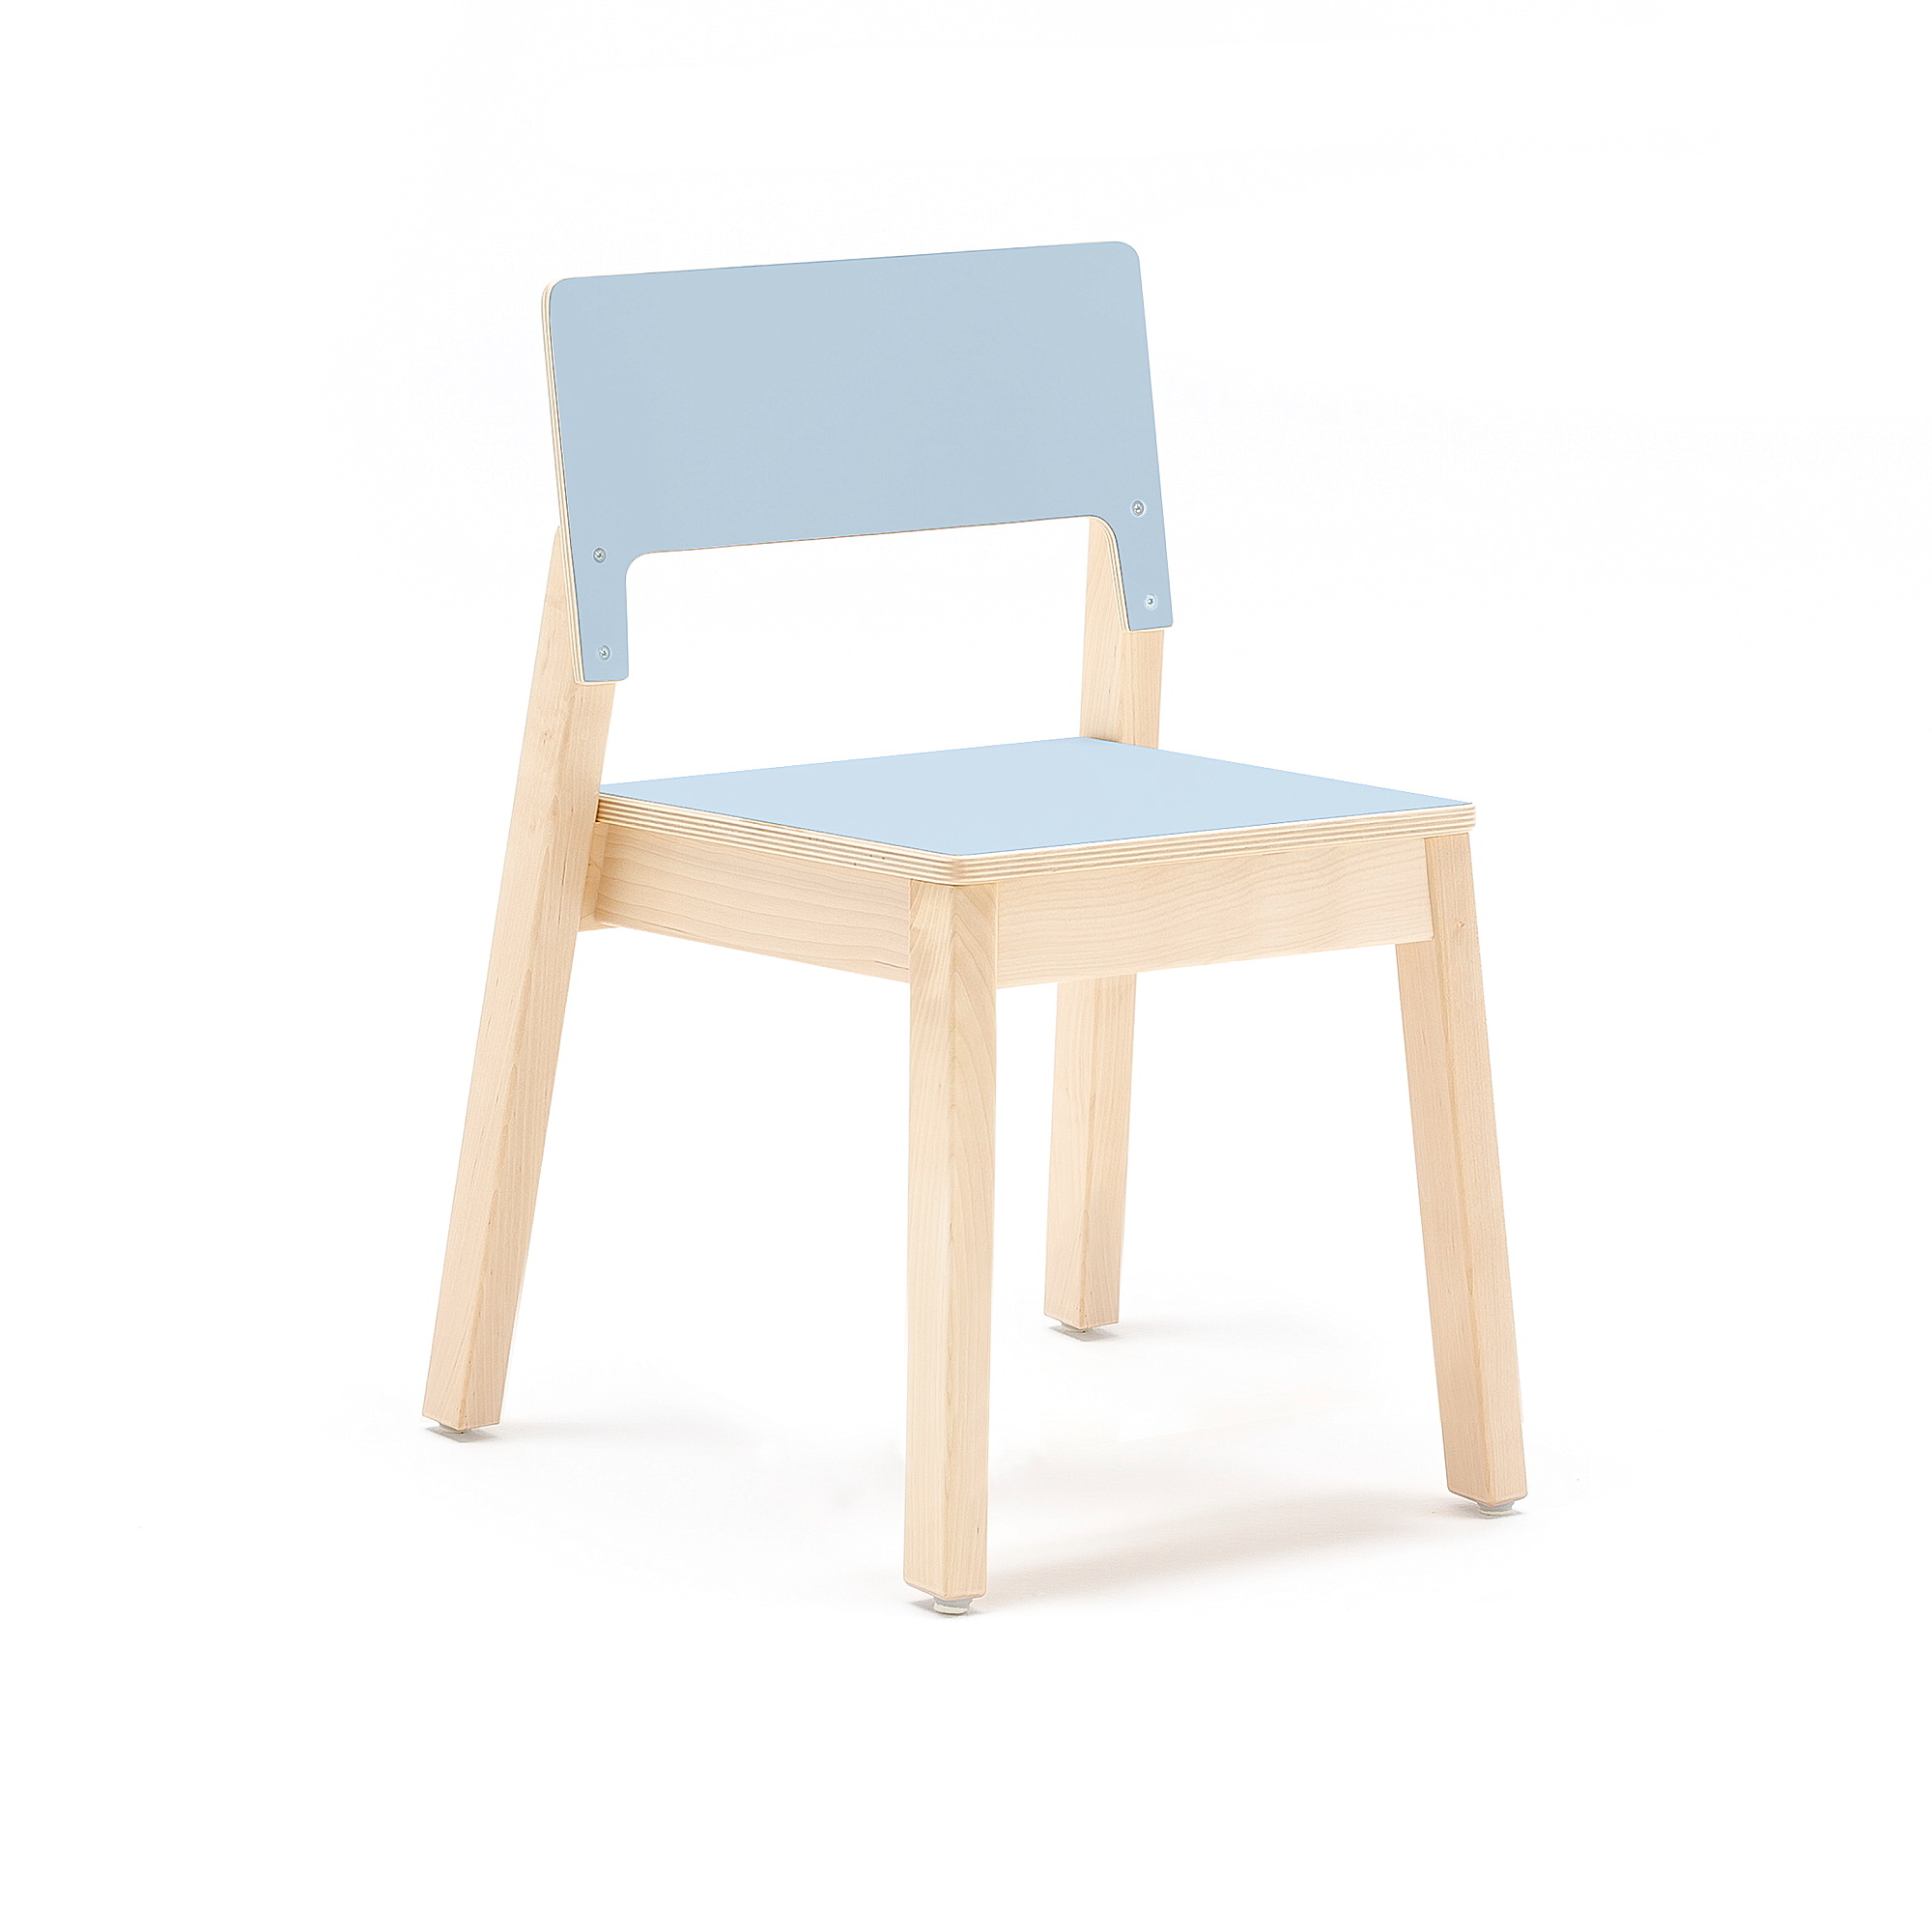 Dětská židle LOVE, výška 380 mm, bříza, modrá